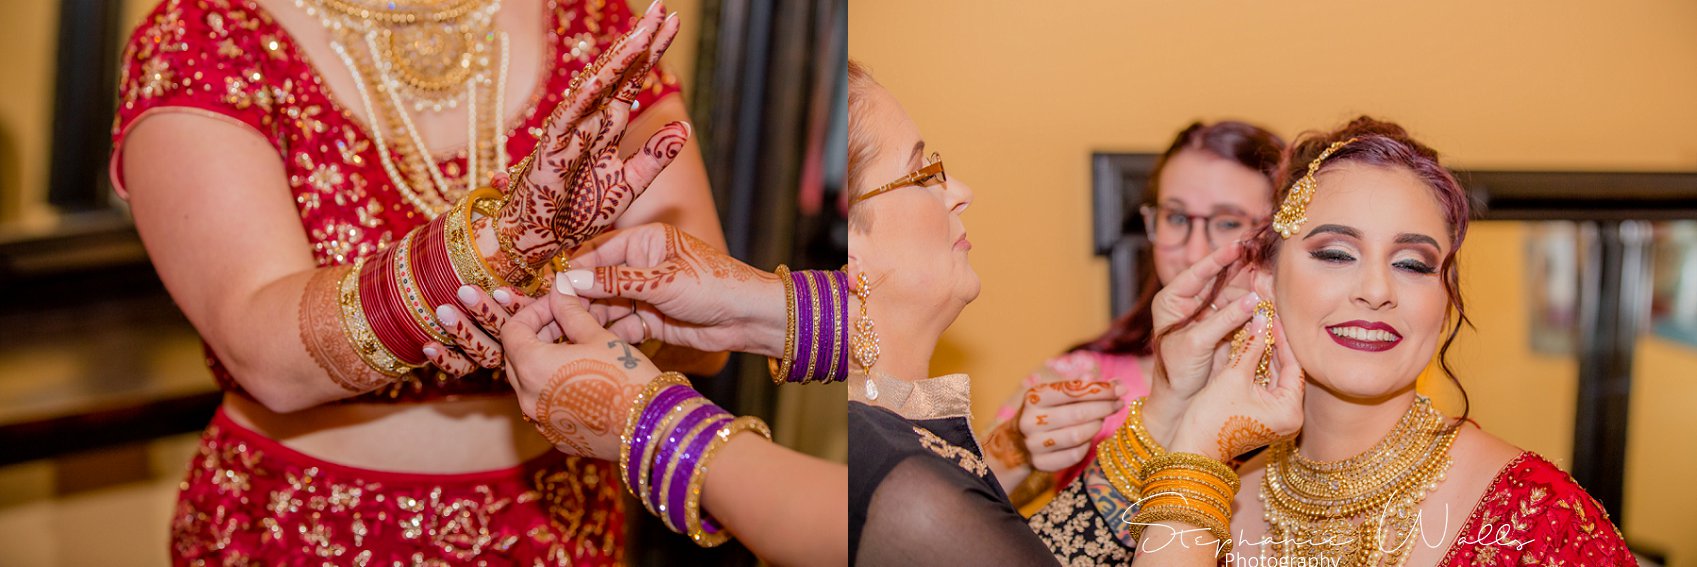 Kaushik 085 1 Snohomish Fusion Indian Wedding With Megan and Mo